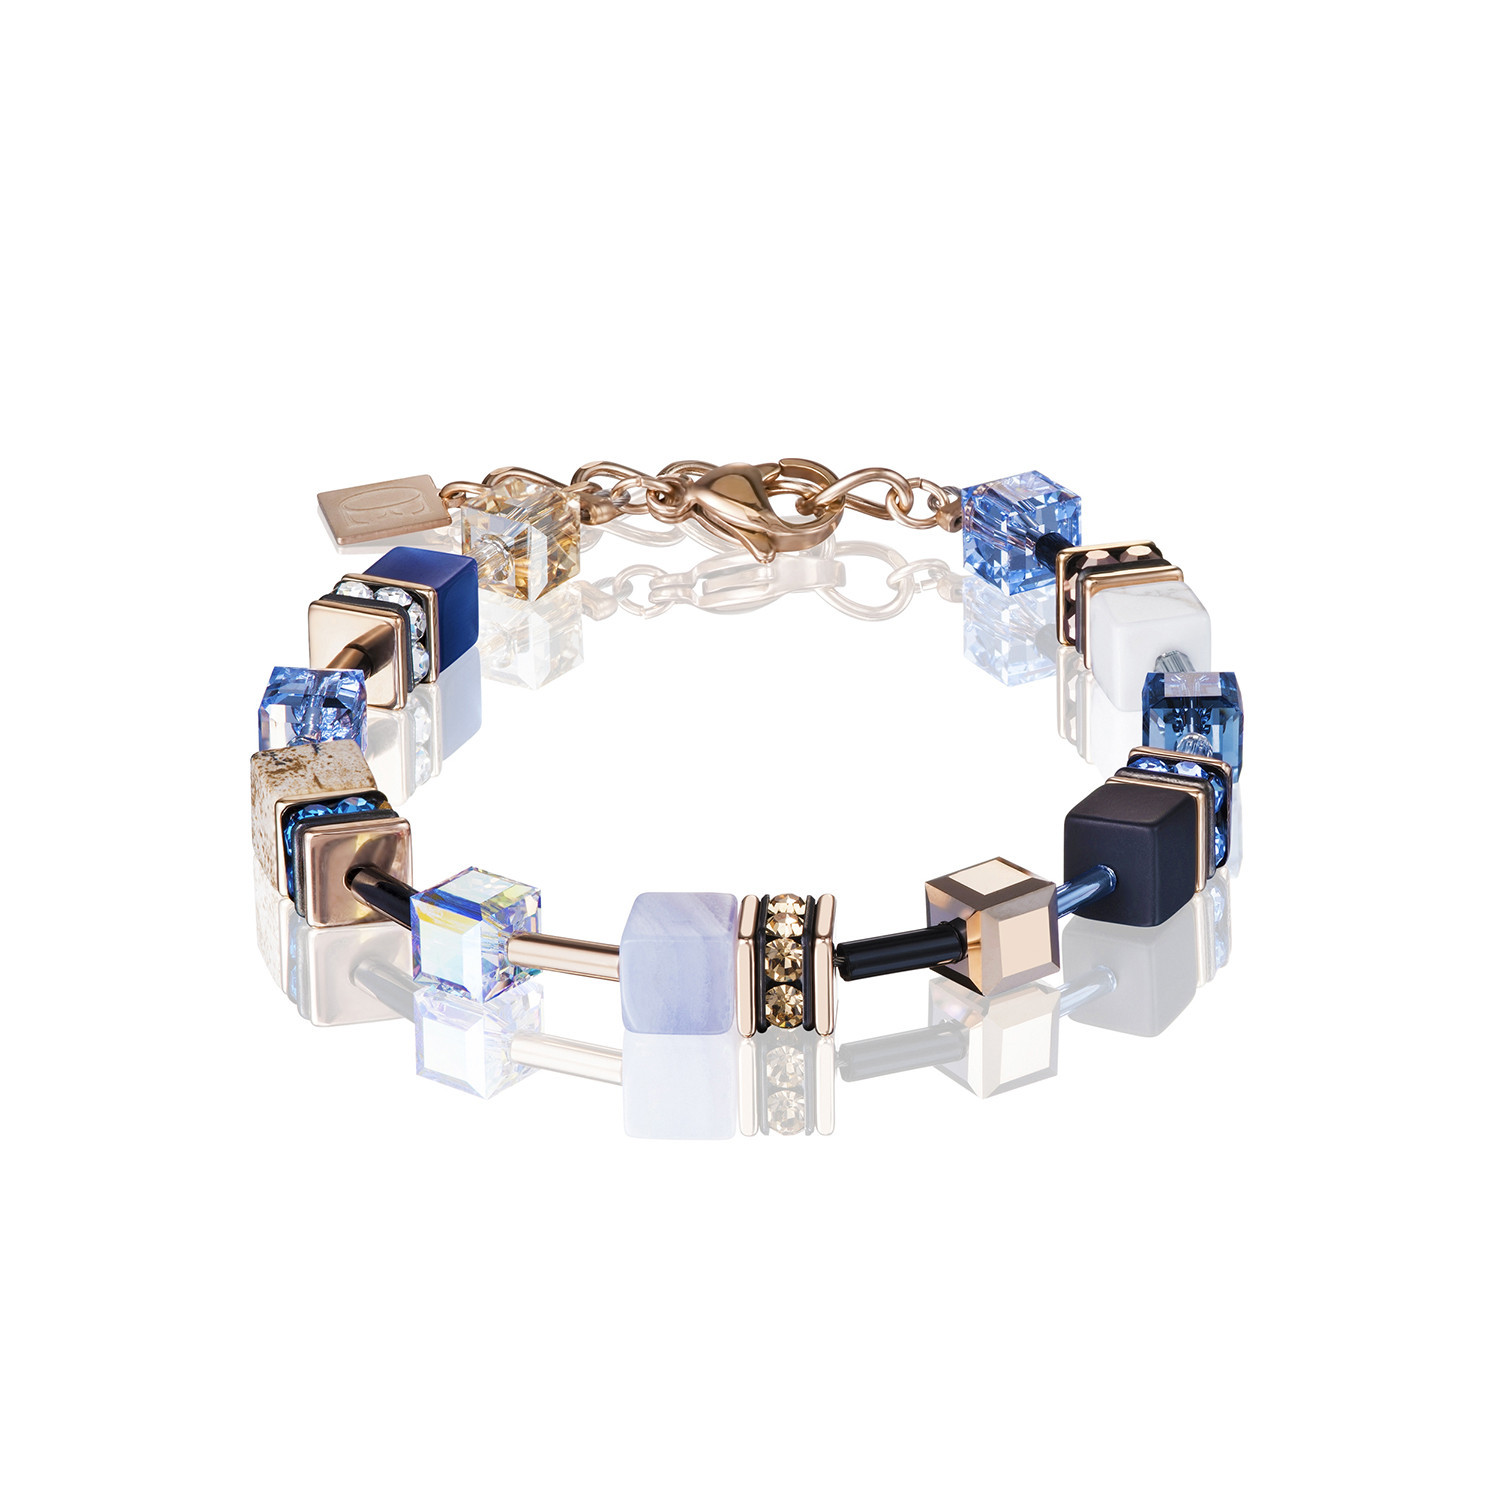 Bracelet Coeur de Lion géocube acier perles cube
tons bleus et beiges